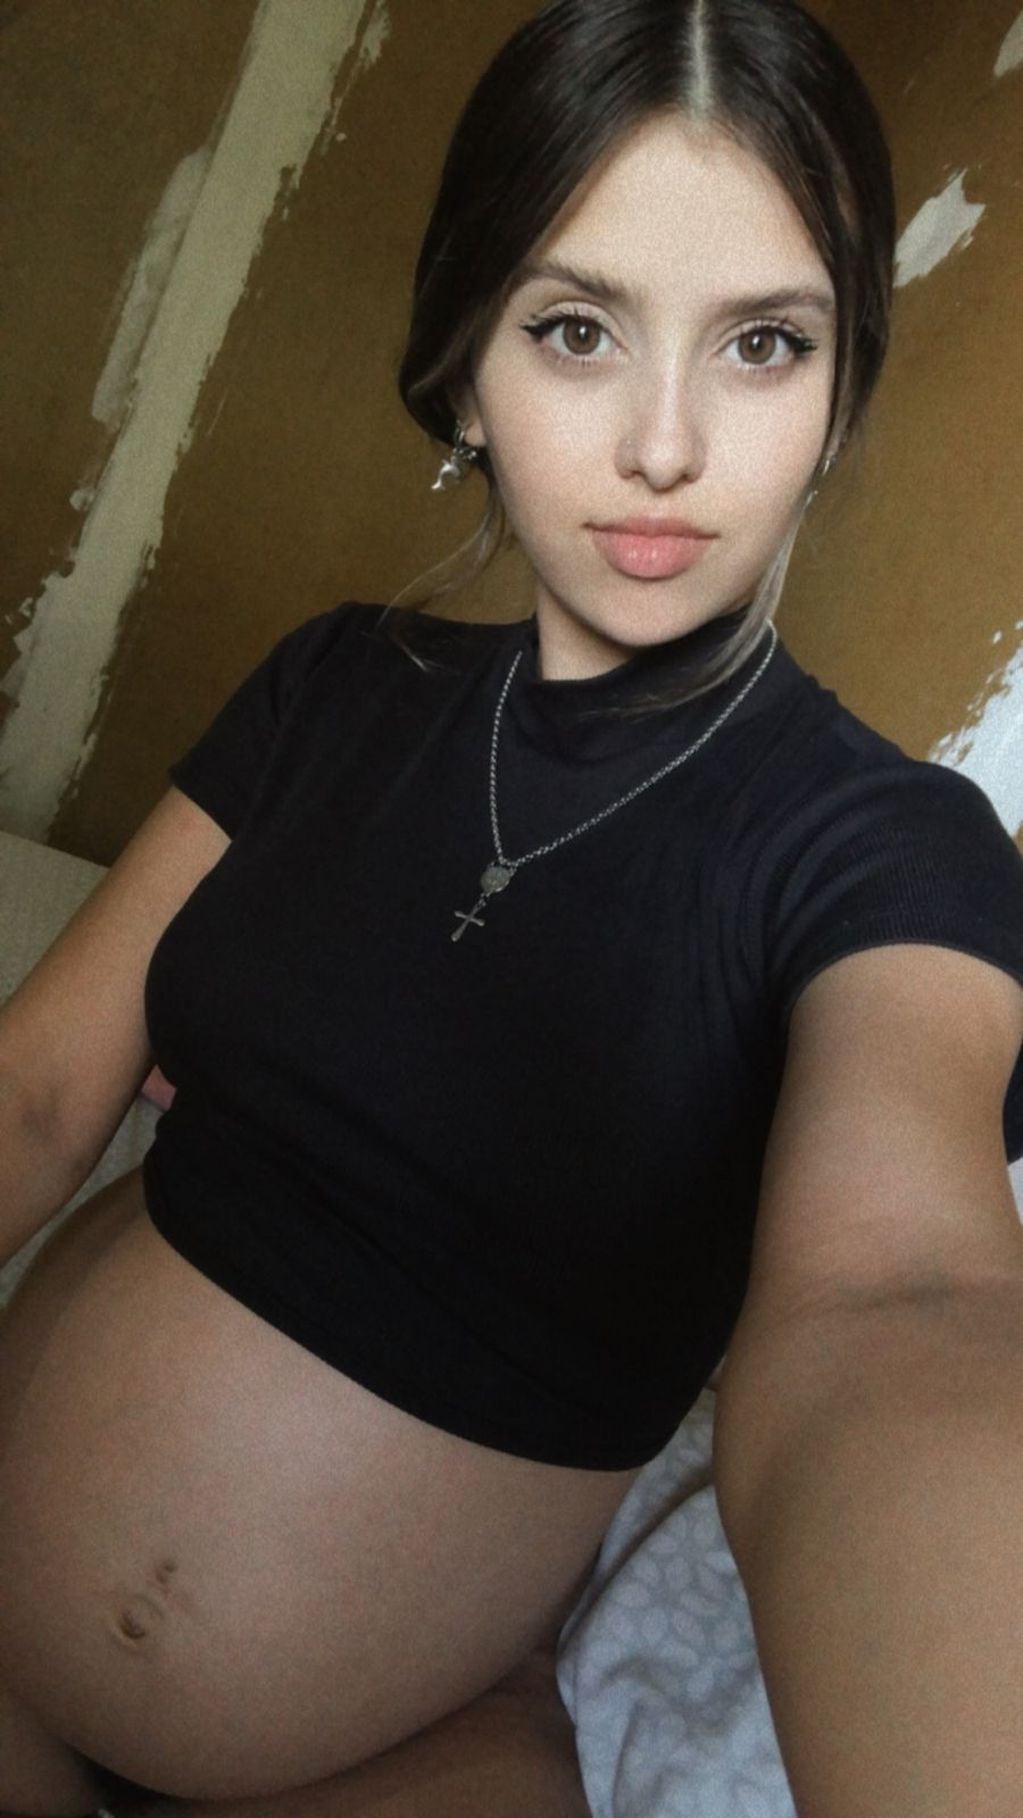 Agustina Tramontana embarazada de 8 meses. Fue agredida en calle Arístides el 14 de marzo de 2023.